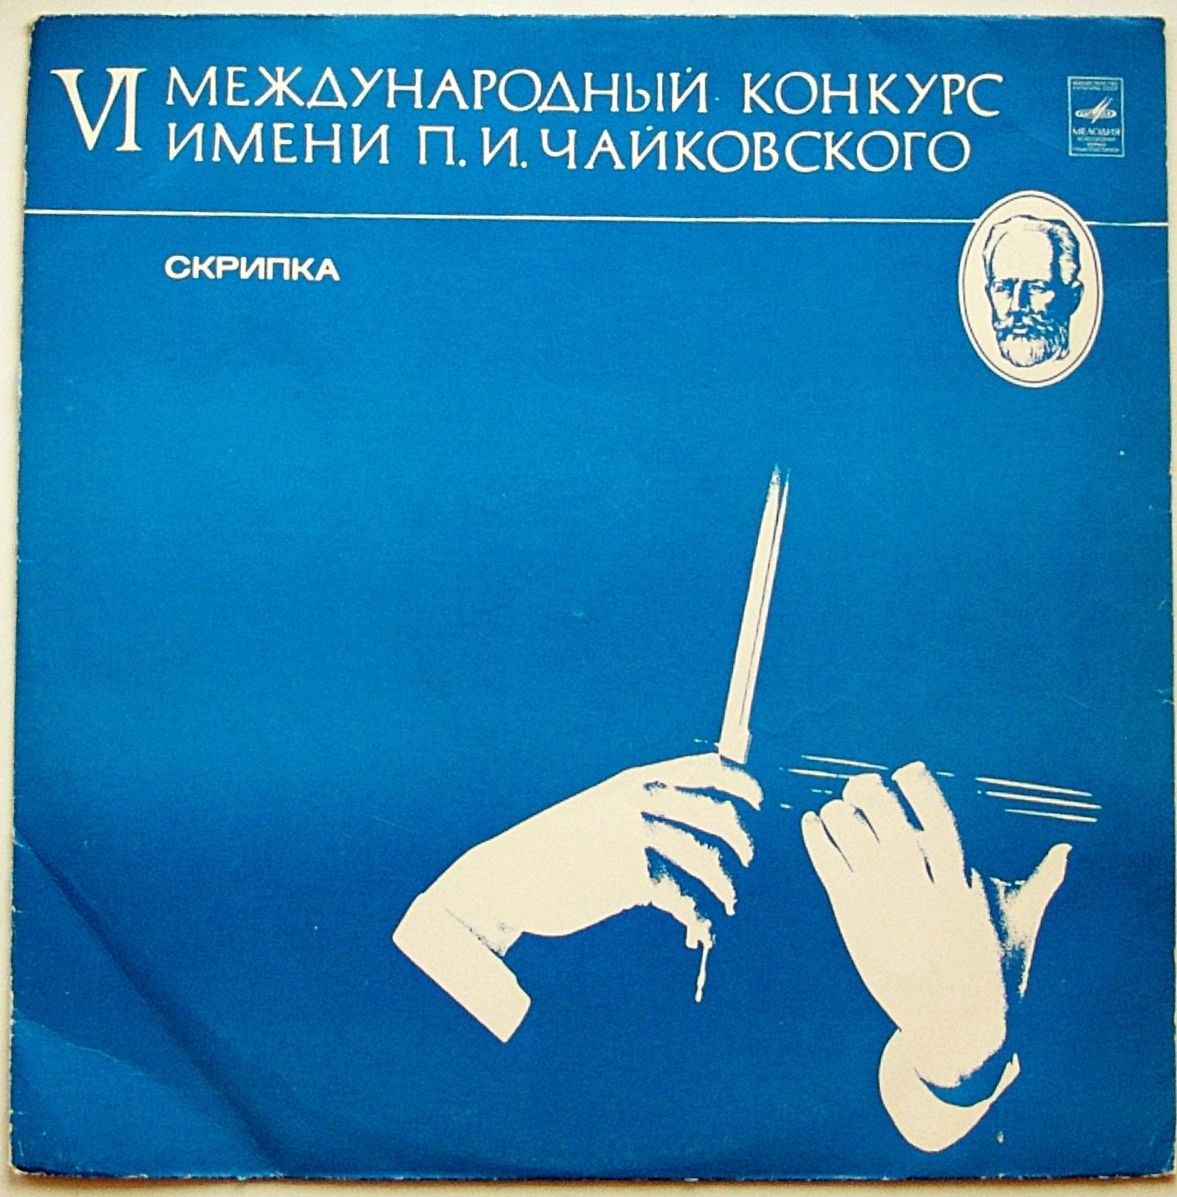 VI Международный конкурс имени П. И. Чайковского. Скрипка